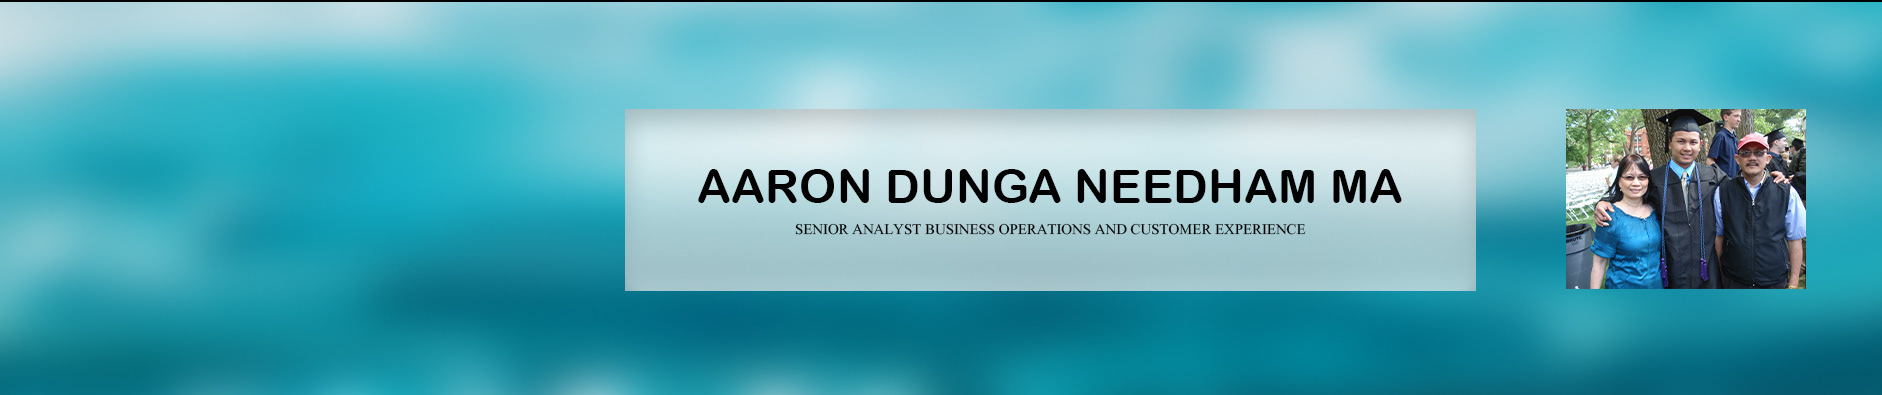 Aaron Dunga Needham Ma's profile banner